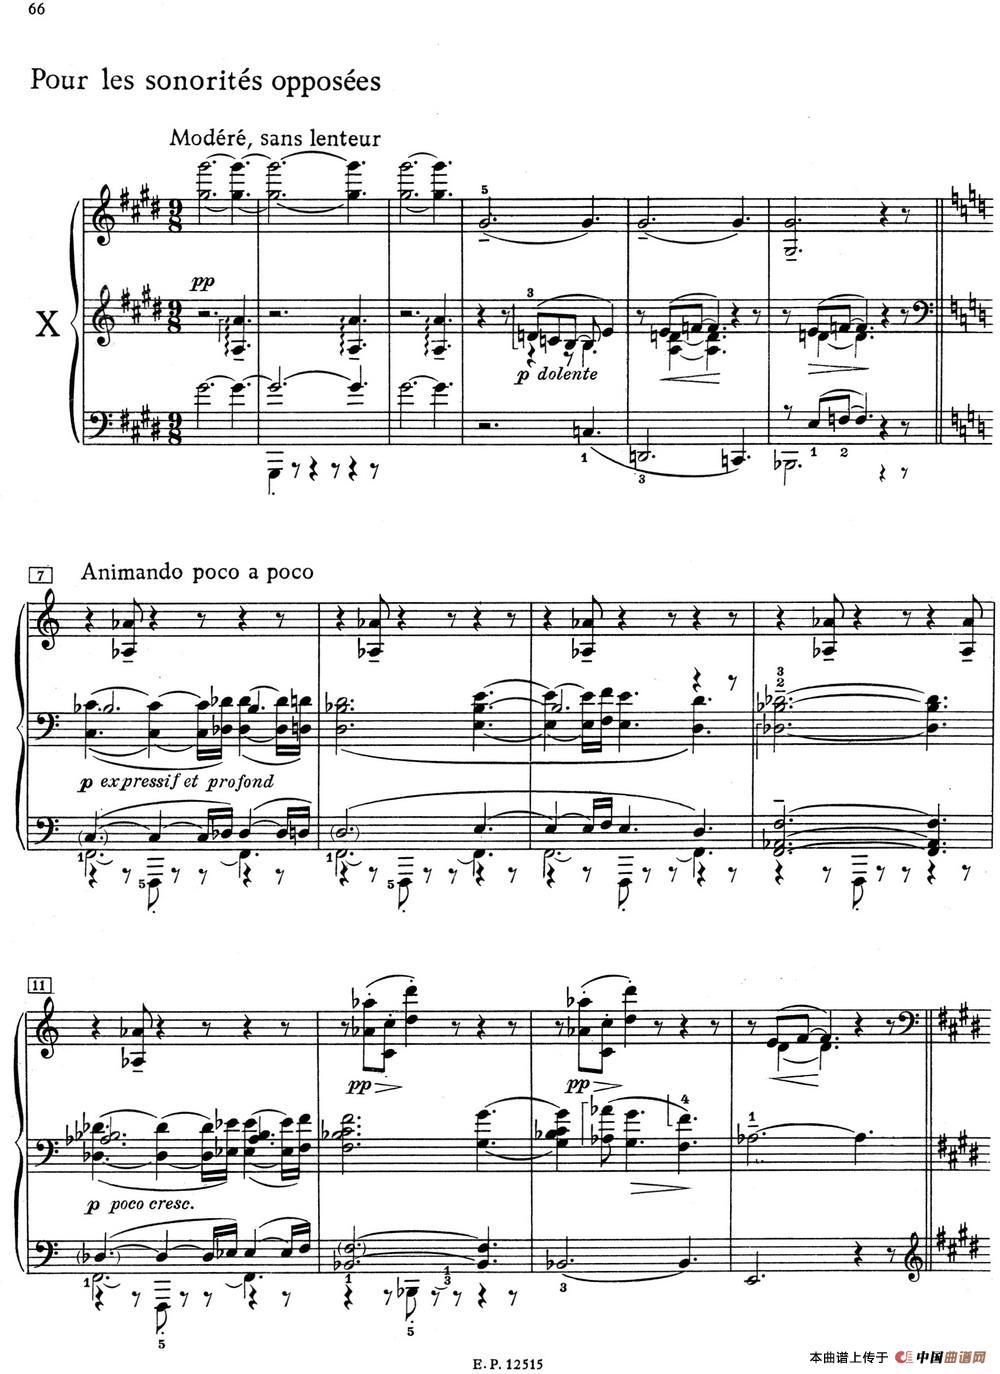 德彪西12首钢琴练习曲（10 对峙音响练习v1.0 sonorités opposées）(1)_10 Pour les sonorites opposees_页面_1.jpg